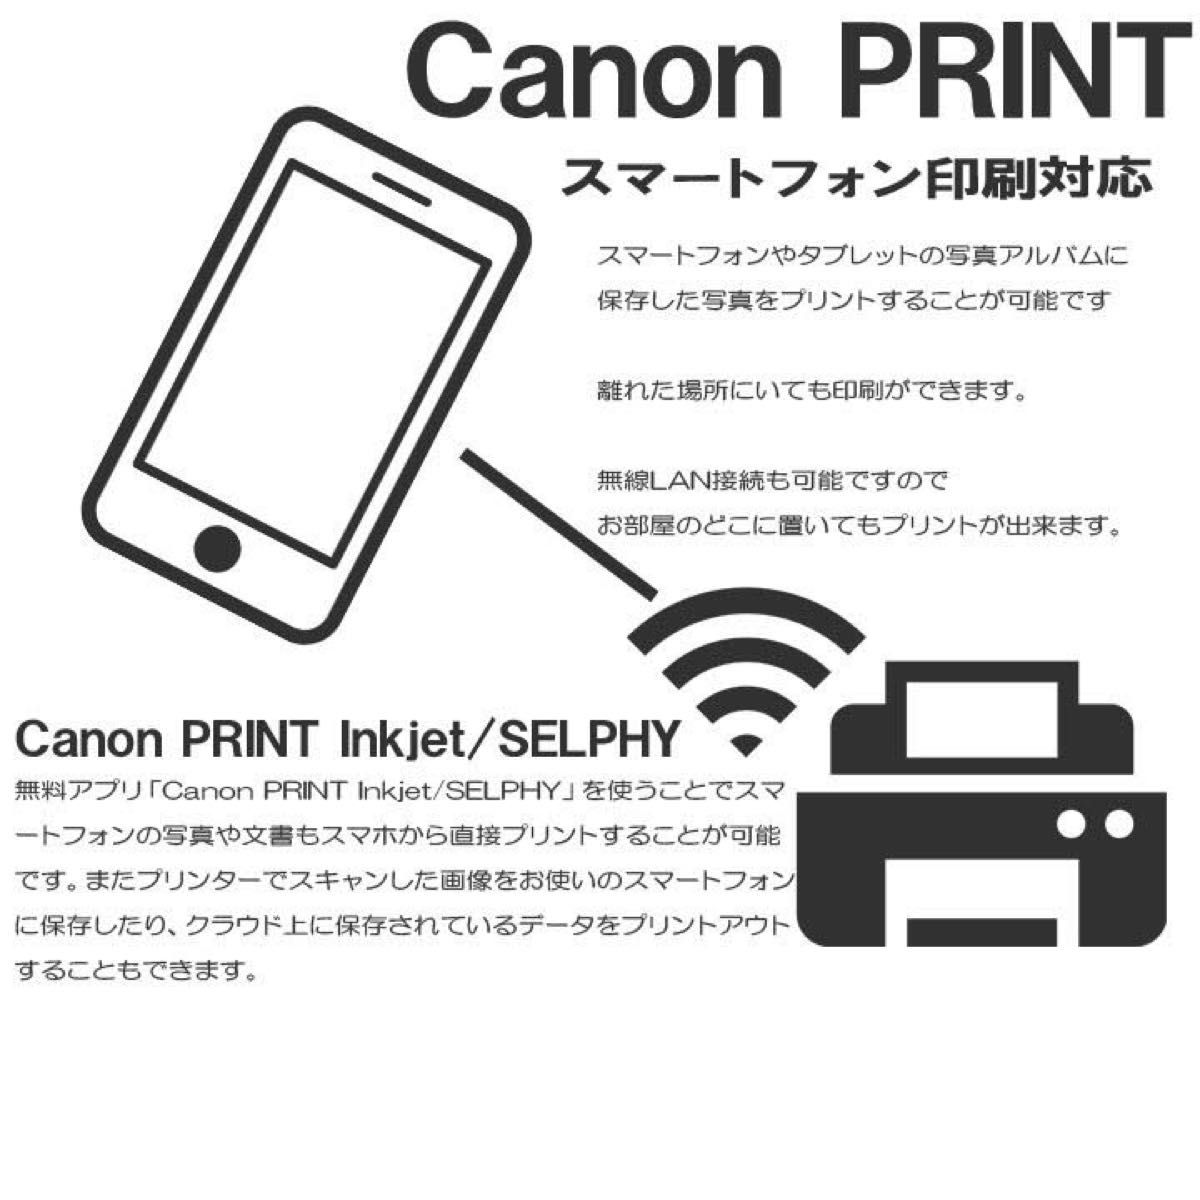 新品未使用 TS3530 キャノン プリンター 本体 CANON PIXUS コピー機 複合機 スキャナー 印刷機 EG80